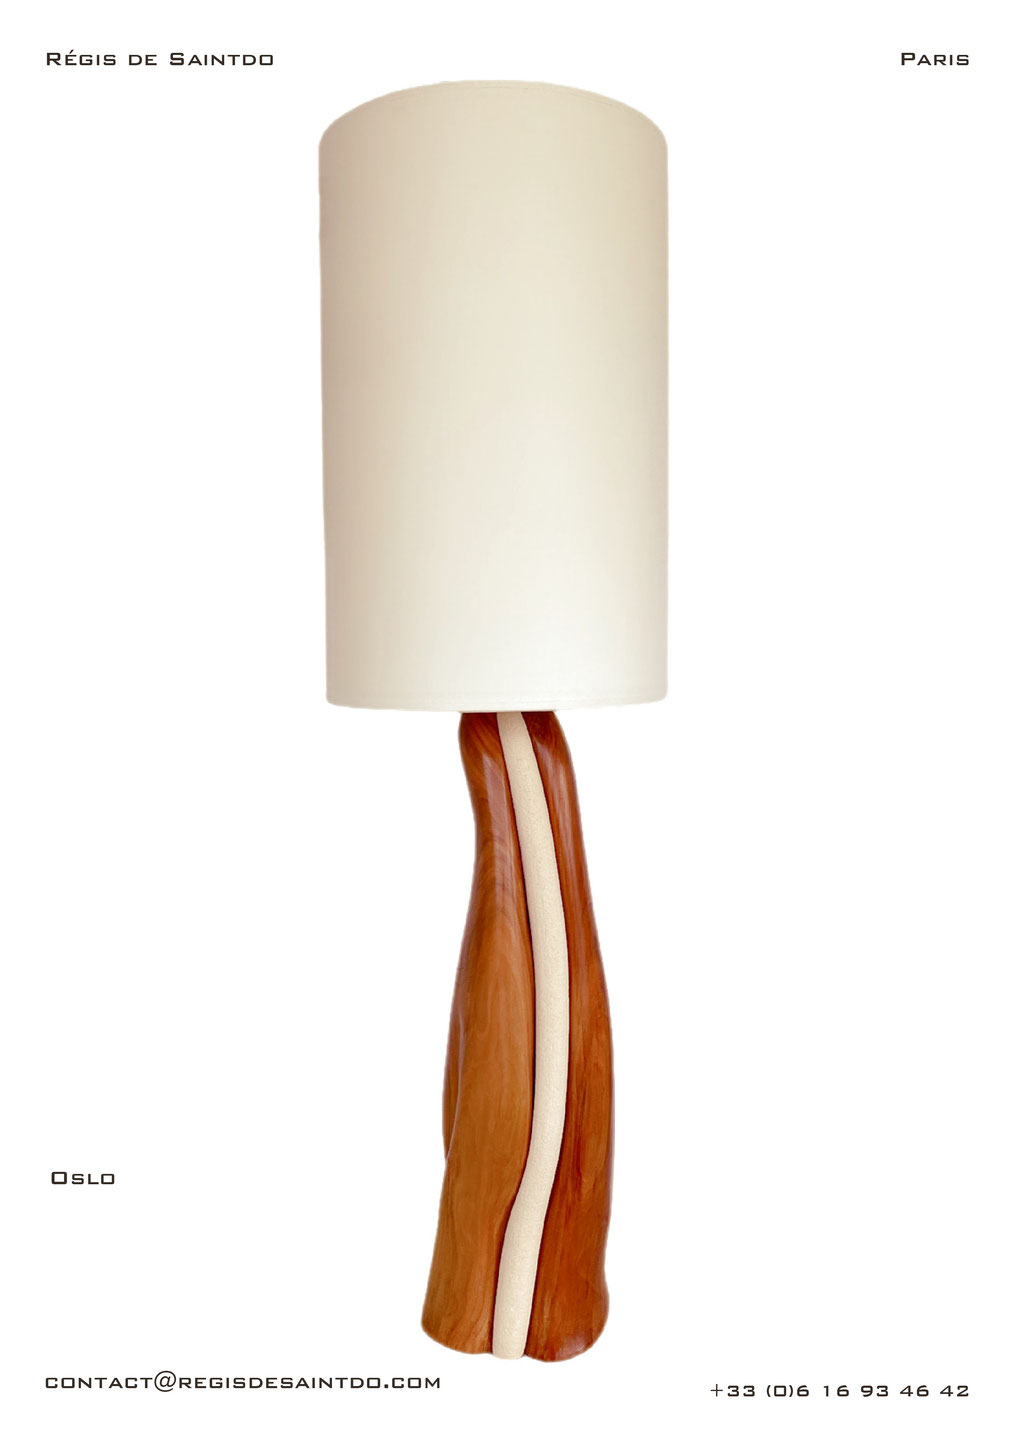 Lampe Oslo-céramique blanche chamotte-Bois de cerisier-fait main @Régis de Saintdo